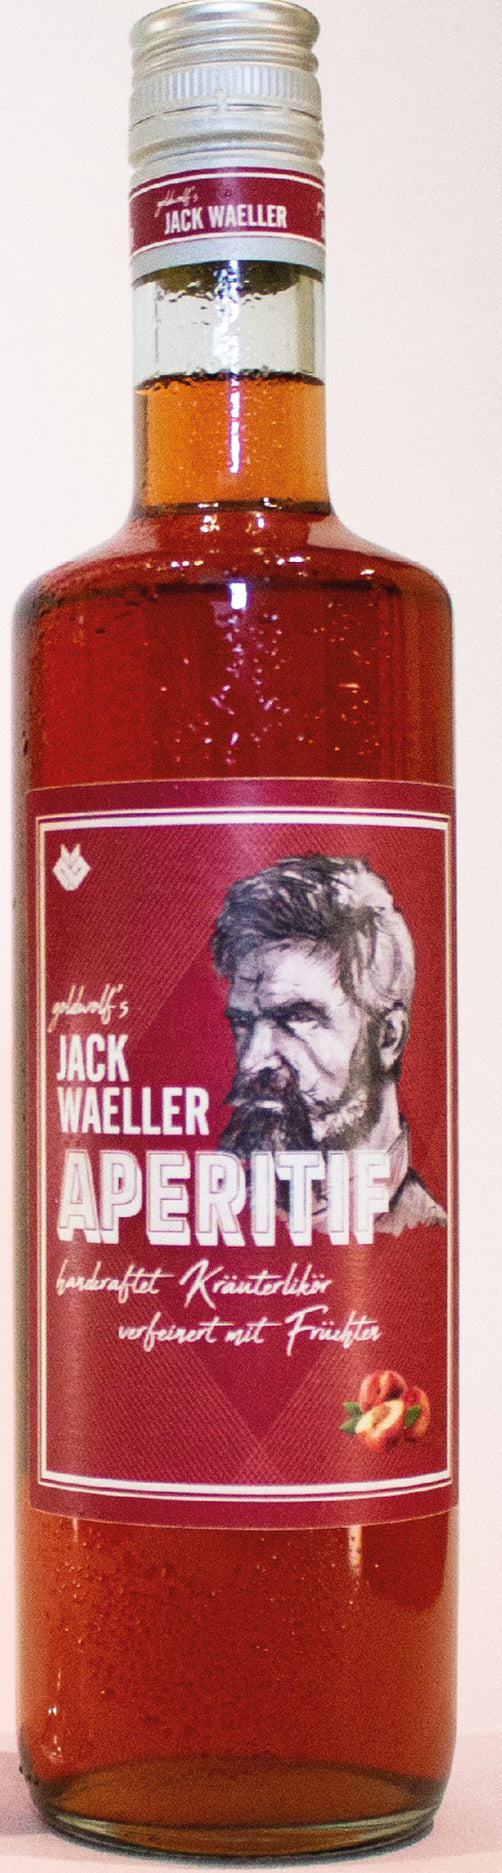 Jack Waeller Aperitif 20%vol., 0,7l